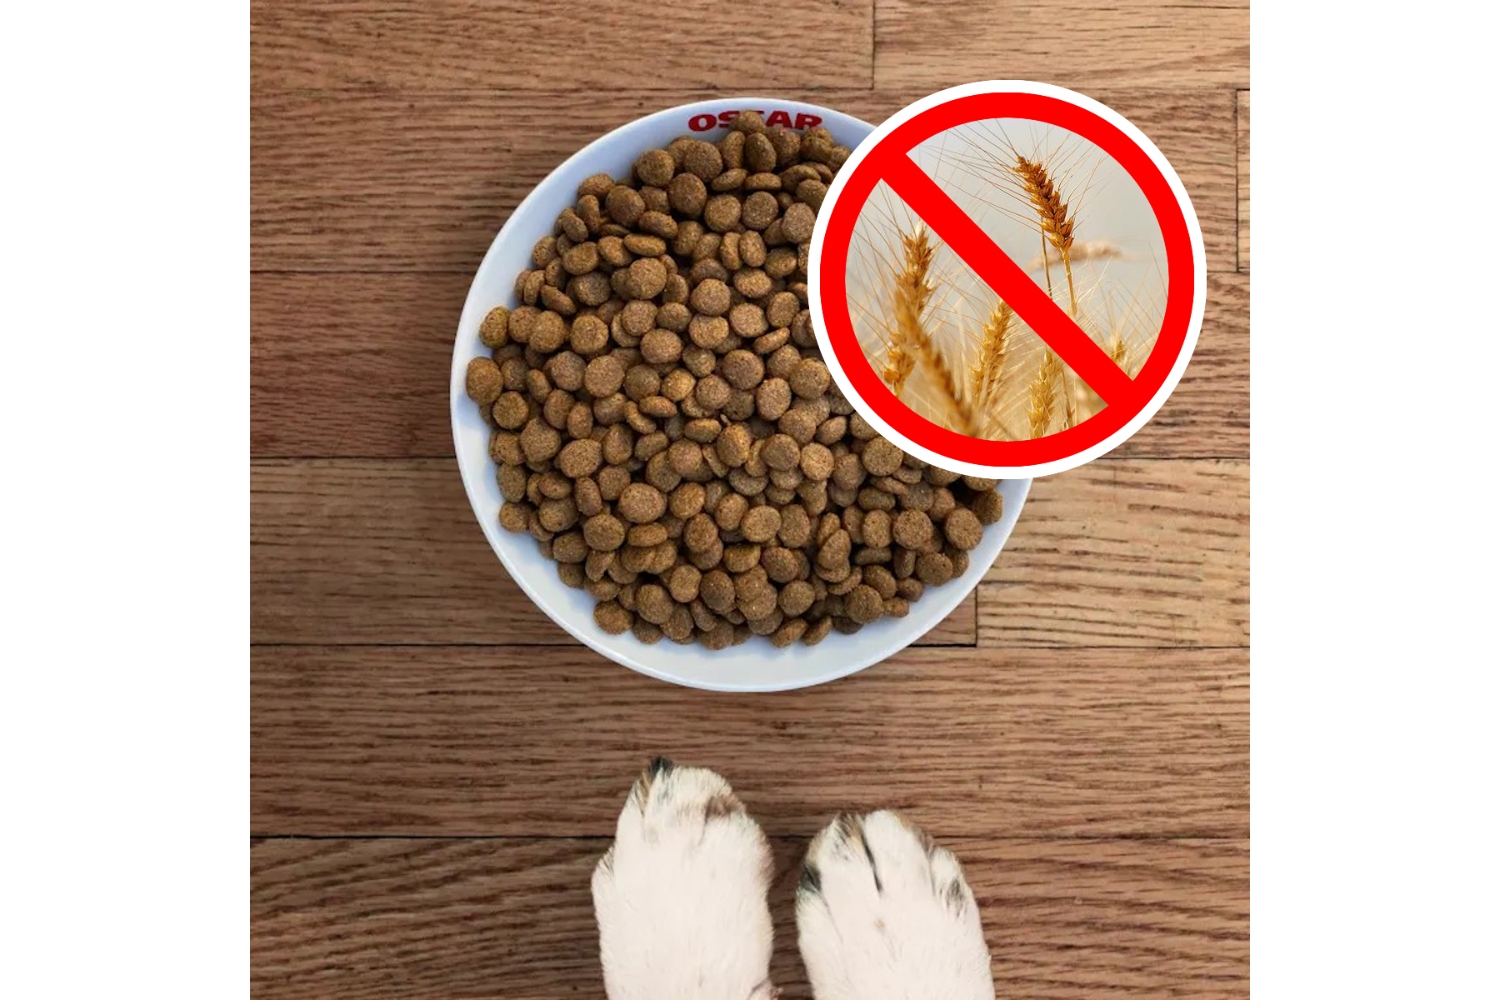 Tegenwoordig kiezen steeds meer baasjes voor graanvrije hondenbrok. Meestal om de gezondheid van hun trouwe viervoeter te ondersteunen of kwaaltjes te bestrijden. Maar soms ook om het dieet van hun hond volledig op het dieet van een carnivoor te baseren.